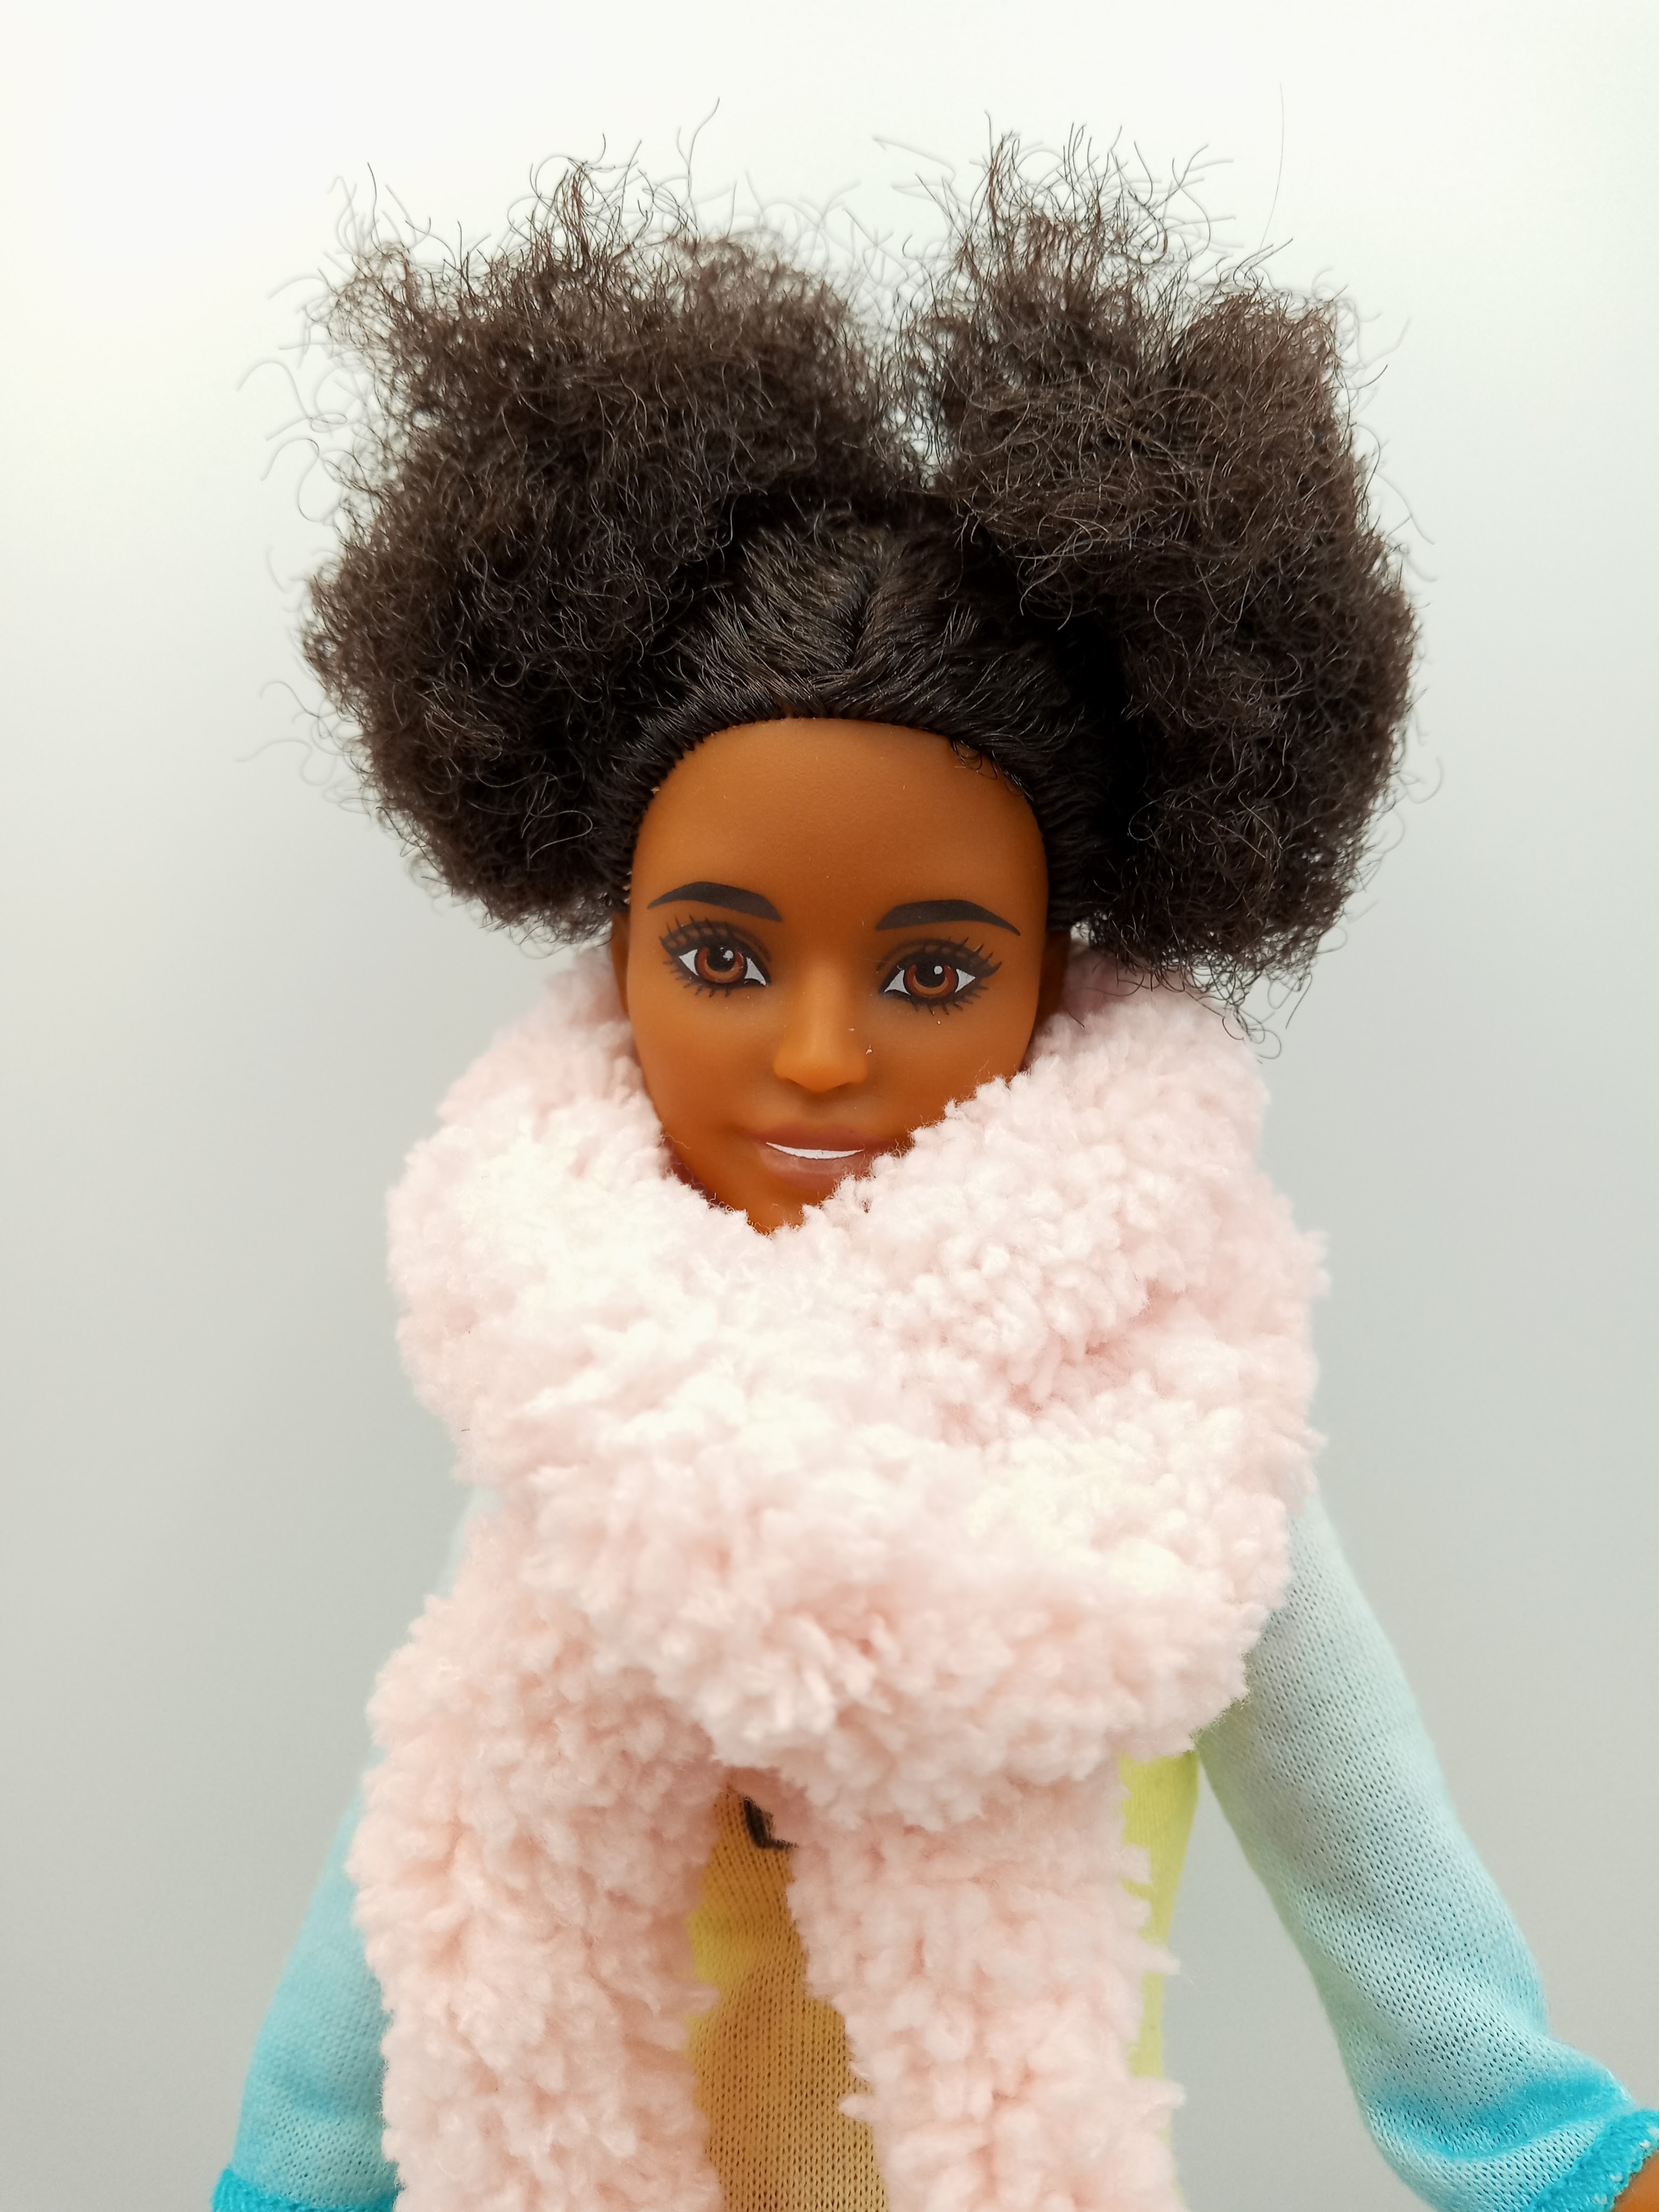 Barbie Blog : Barbie Scarf & Trend Alert! Super Scarves